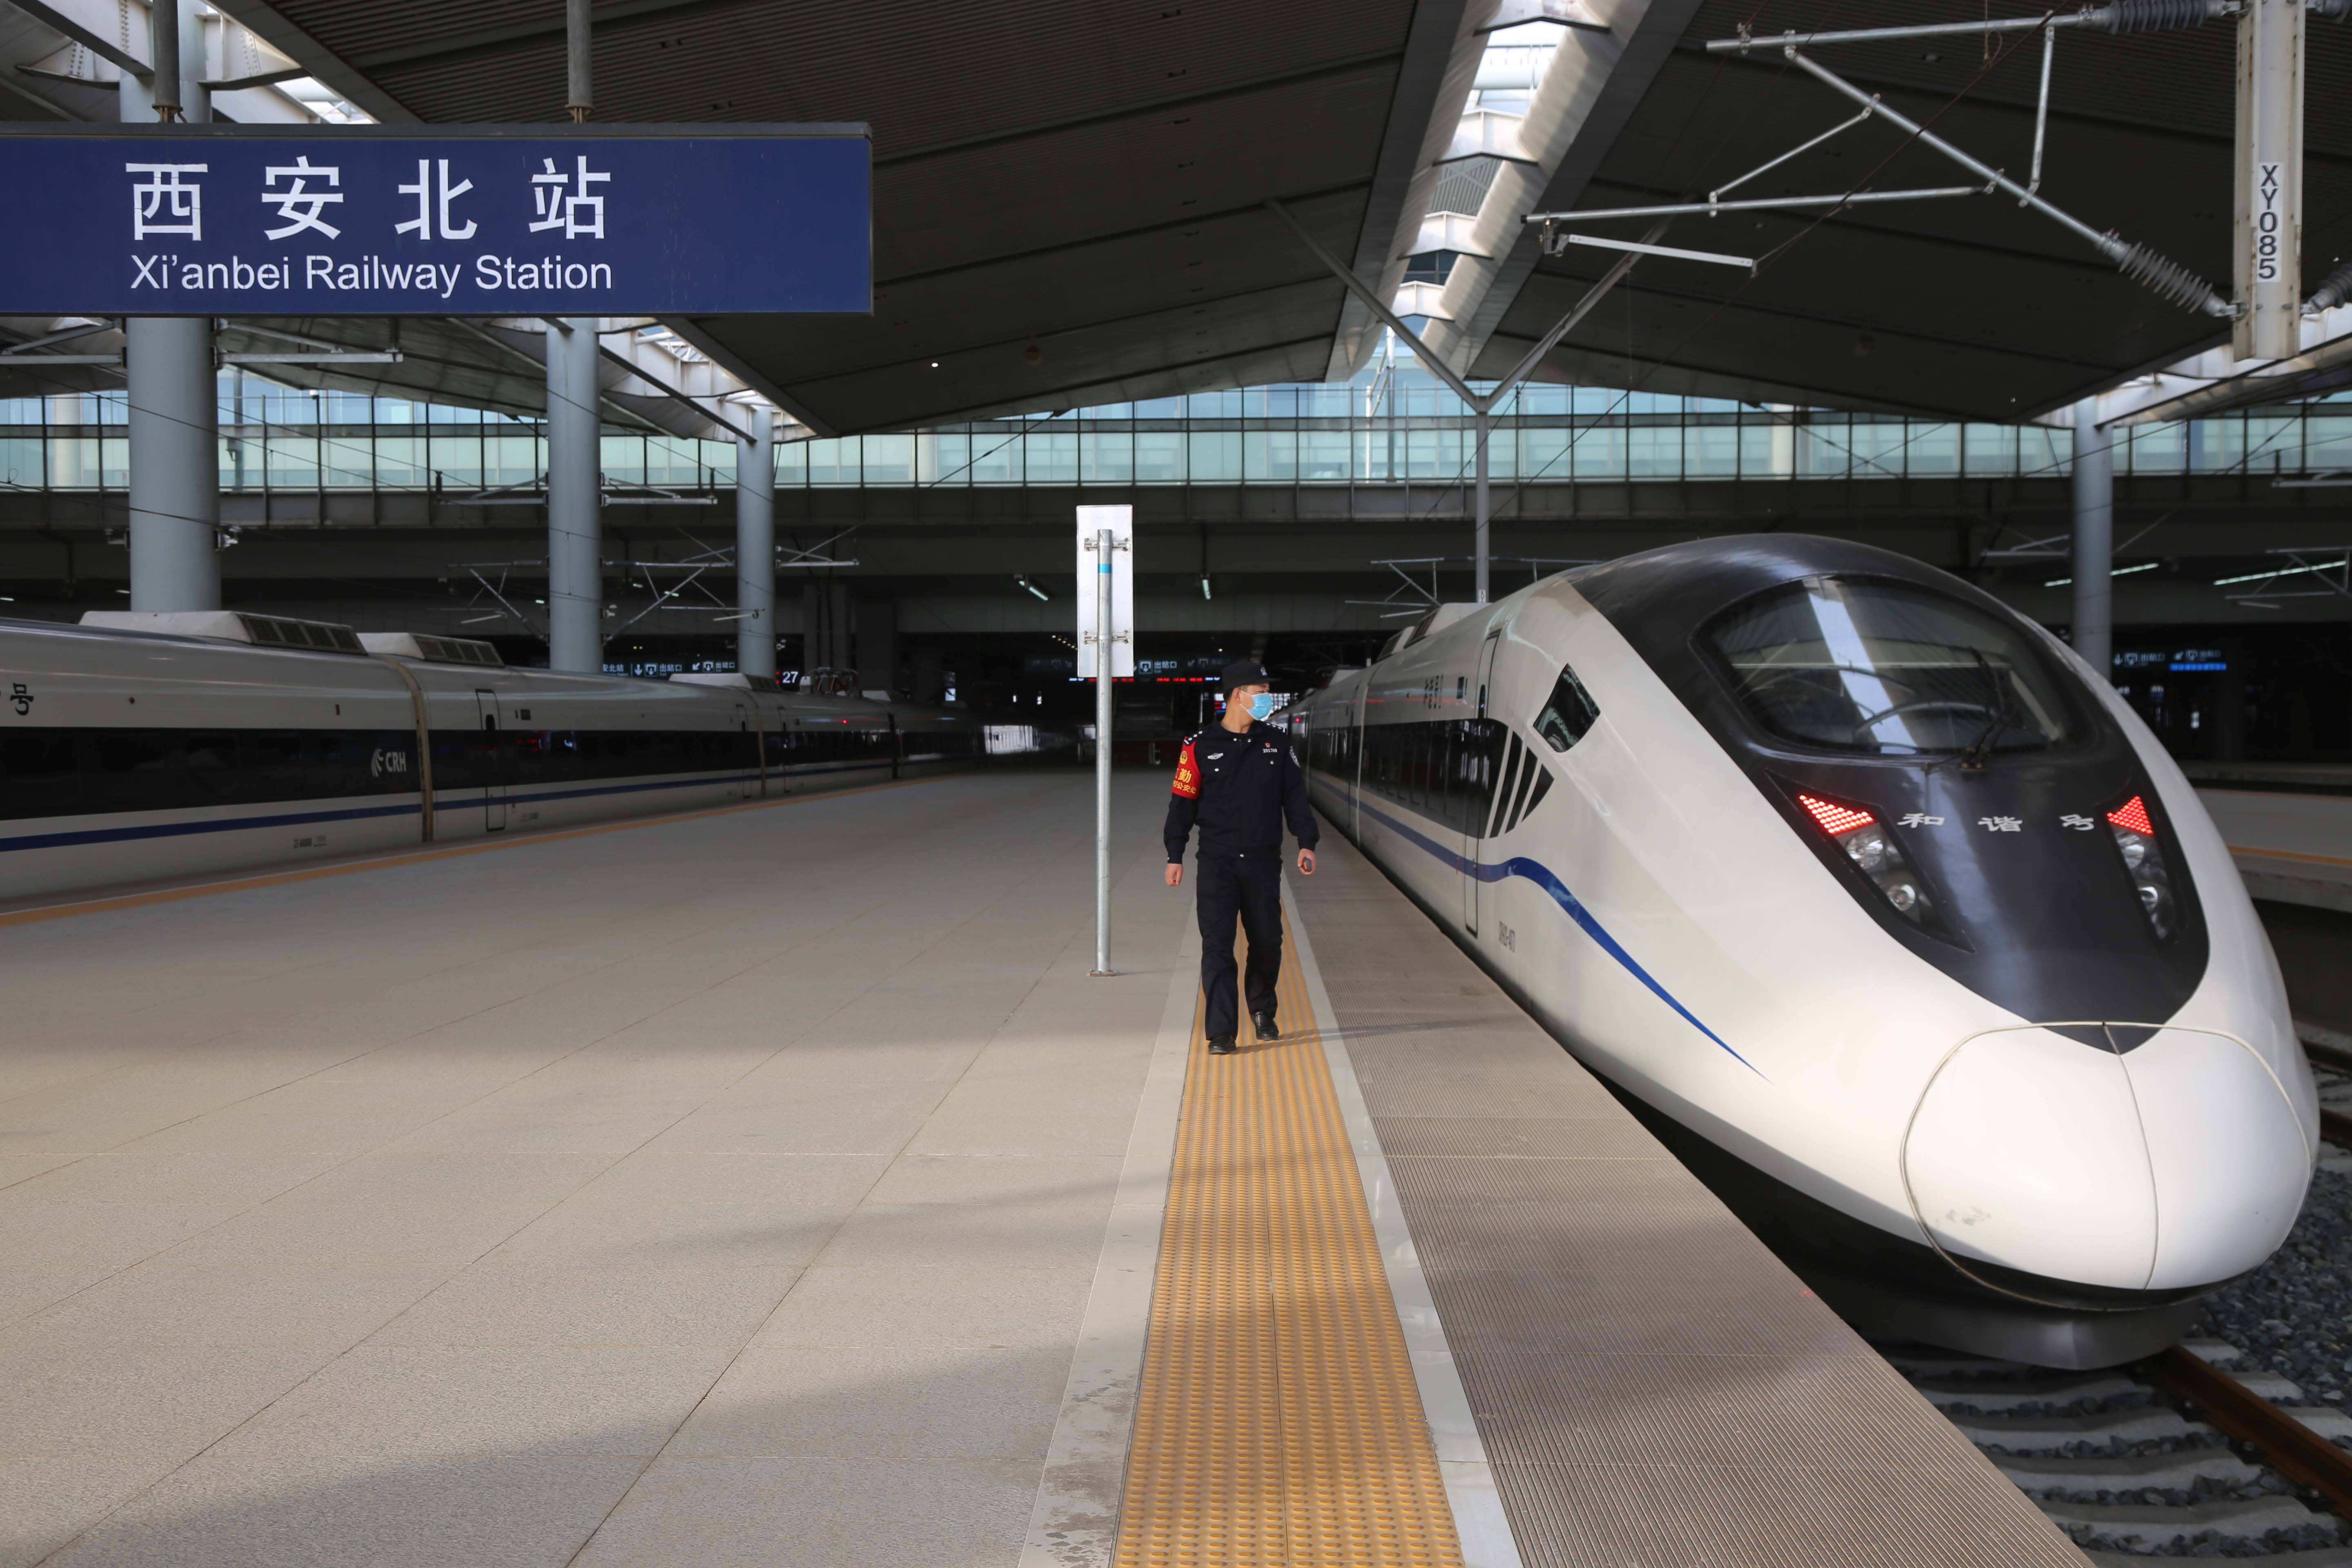 西安北站行驶至庆阳站进行运行图参数测试,标志着西银高铁正式进入试